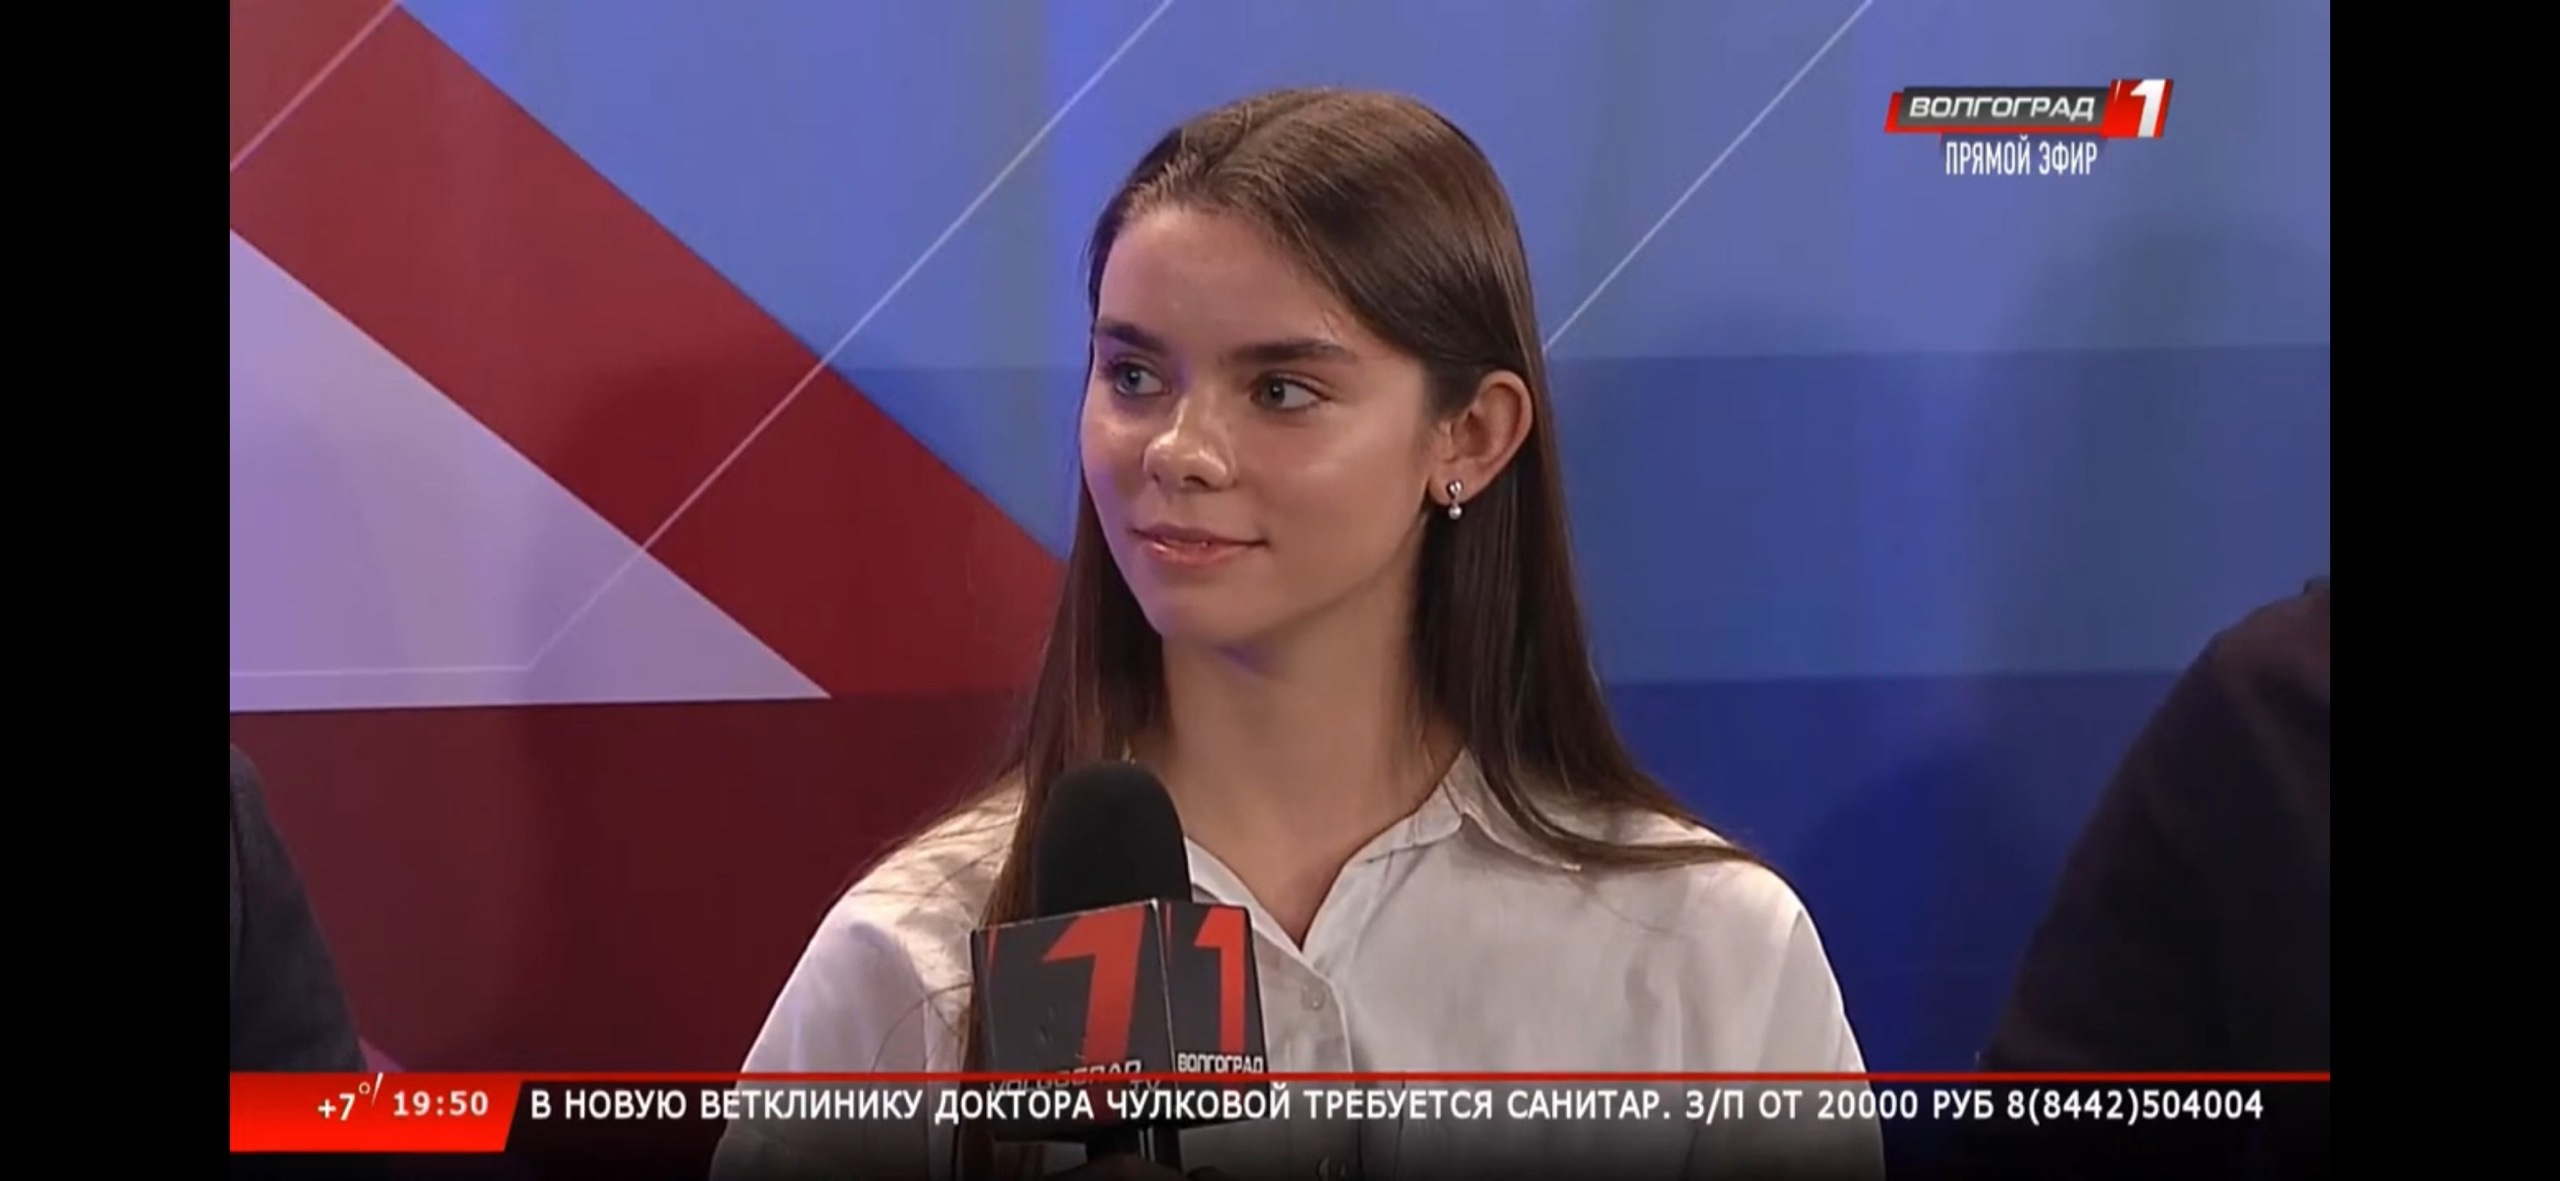 Анна Панова даже не рассматривает возможности уехать из Волгограда